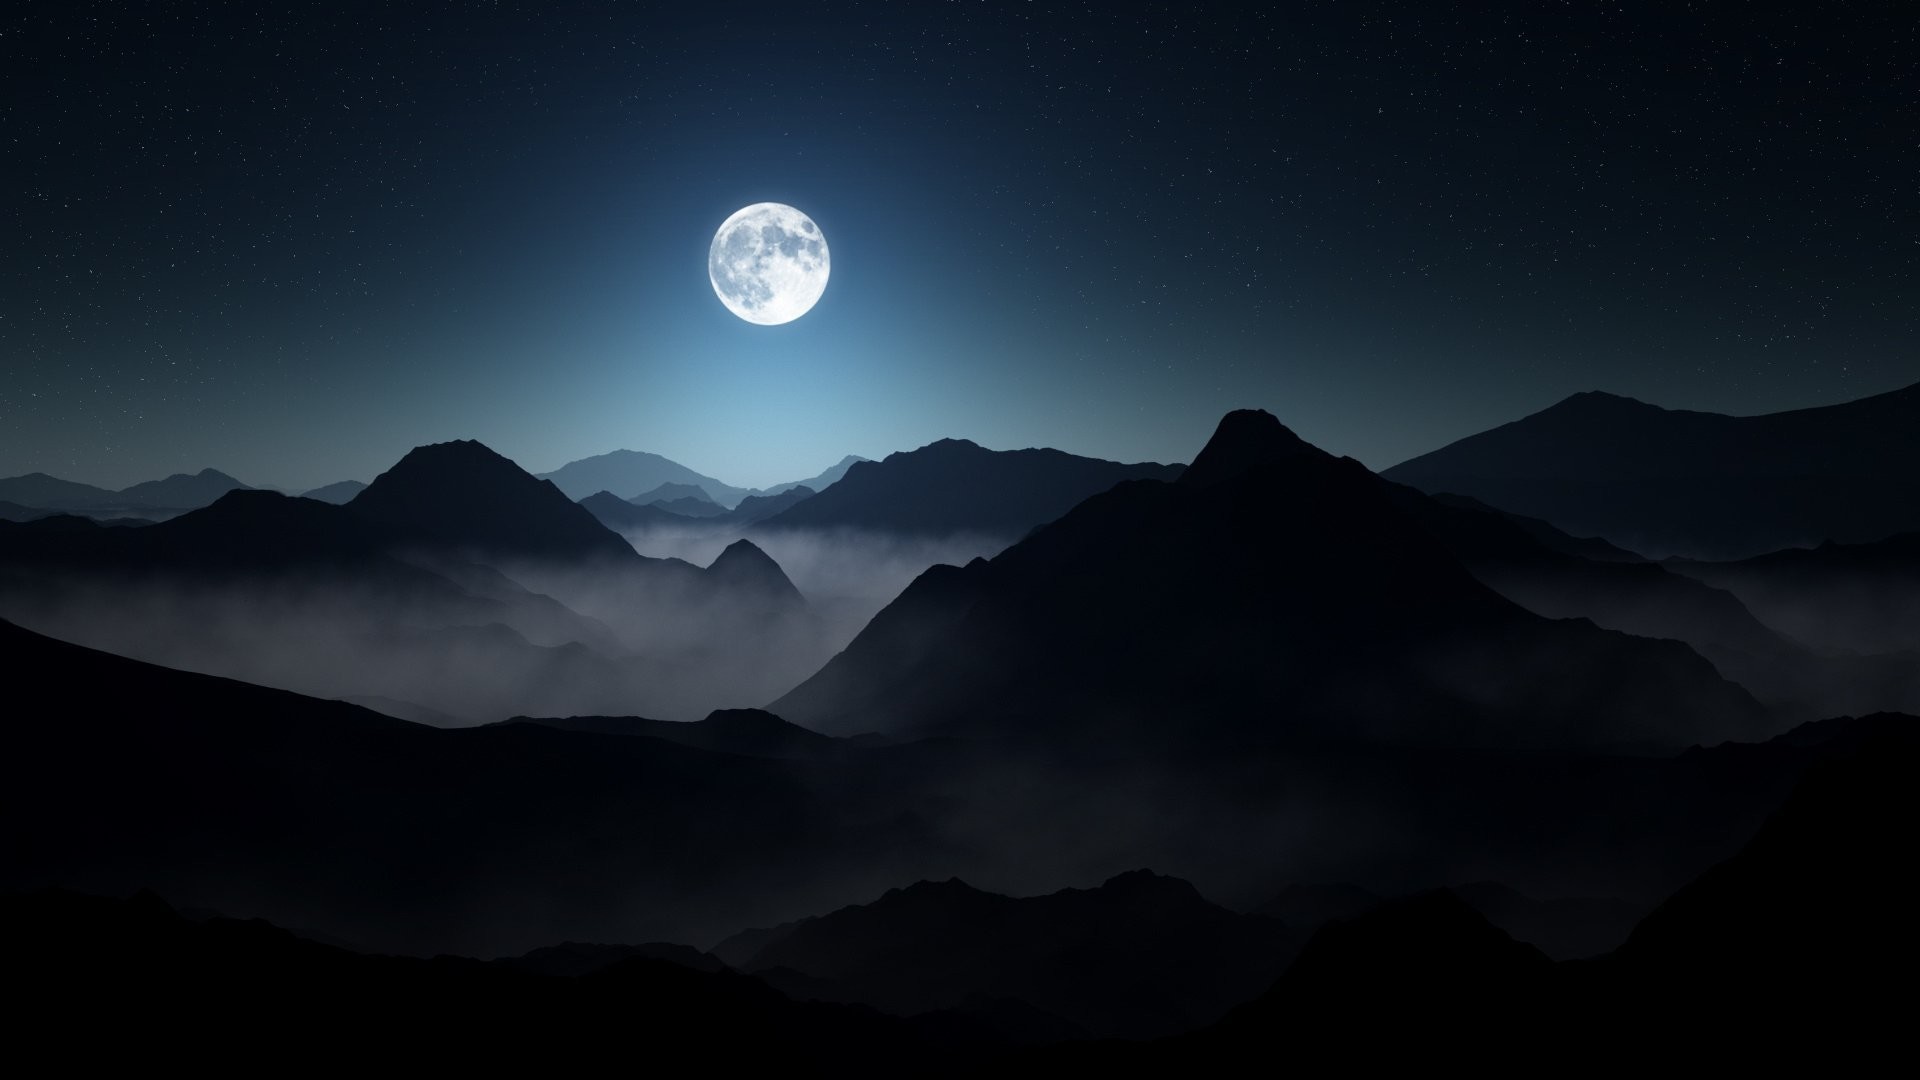 Otto htter darkness foggy landscape lighting moody moon mountains stars dark night full moon mountain fog